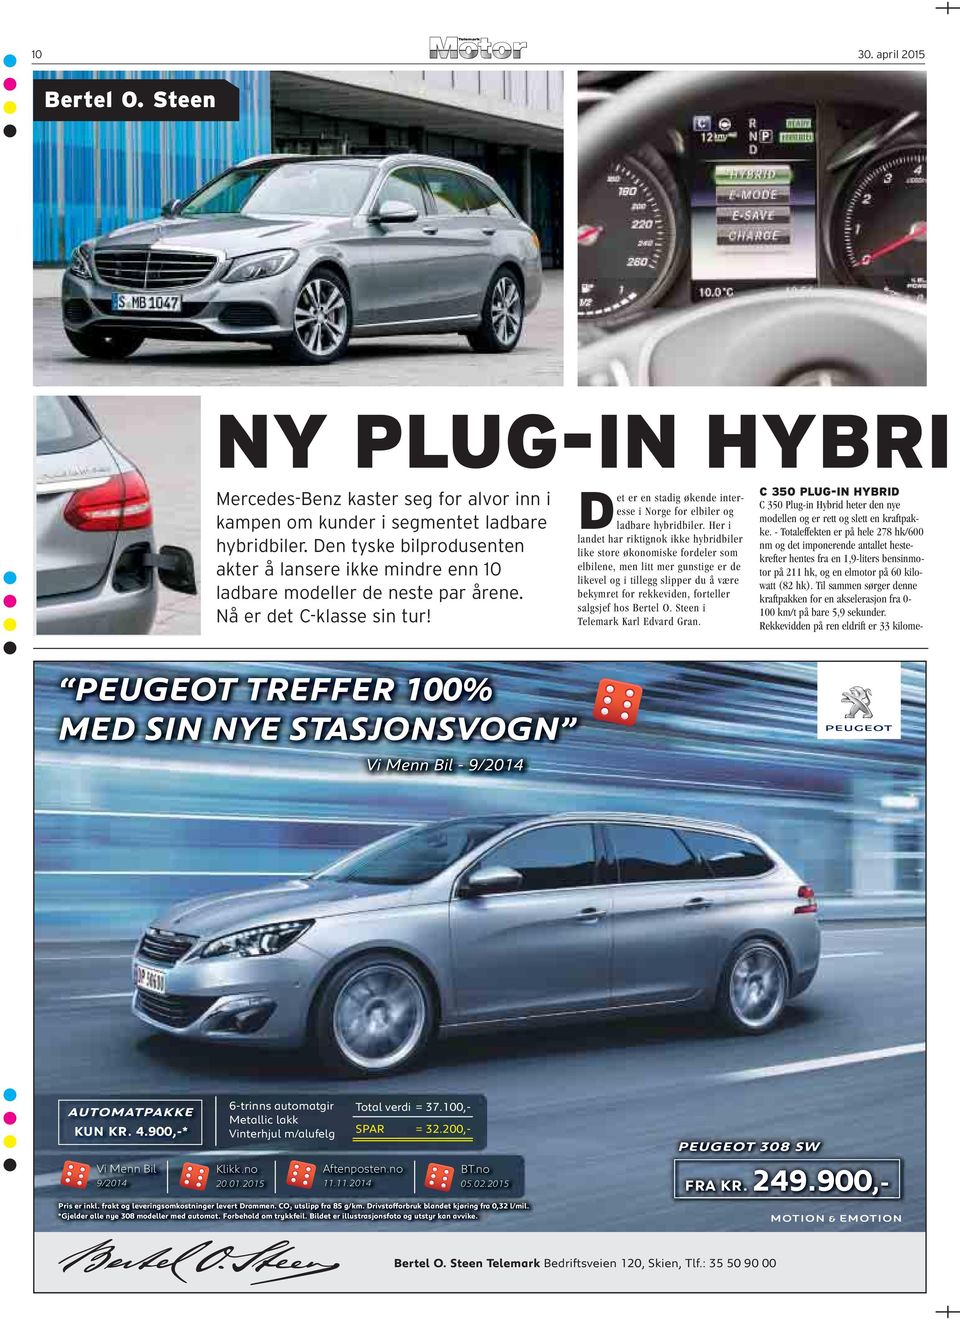 Det er en stadig økende interesse i Norge for elbiler og ladbare hybridbiler.